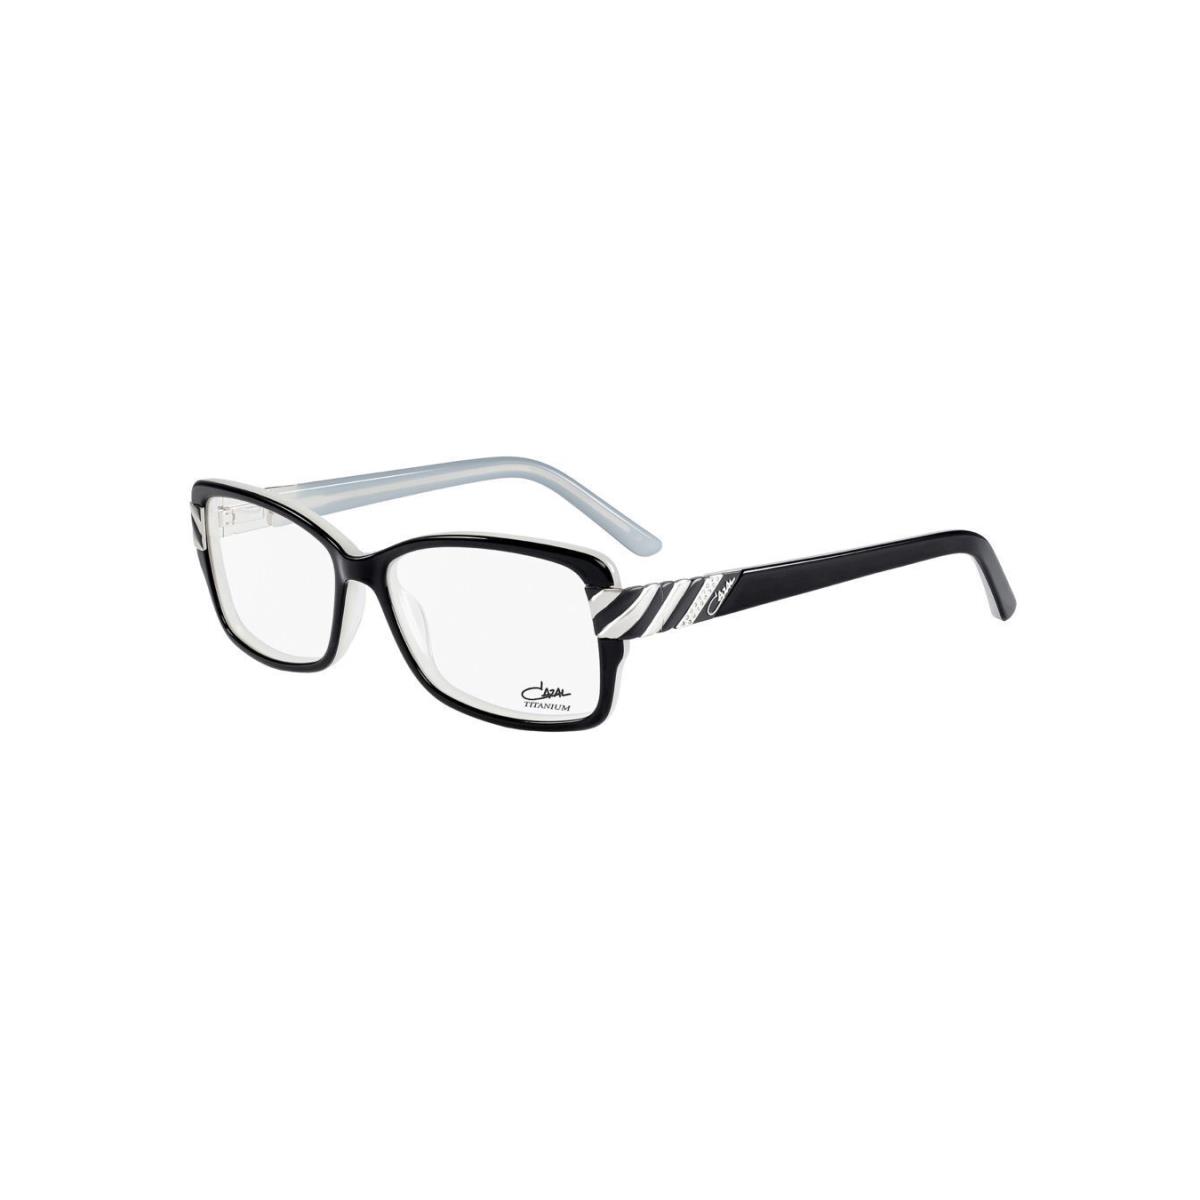 Cazal Eyeglasses 3042 001 Black Full Rim Frames 54MM Rx-able